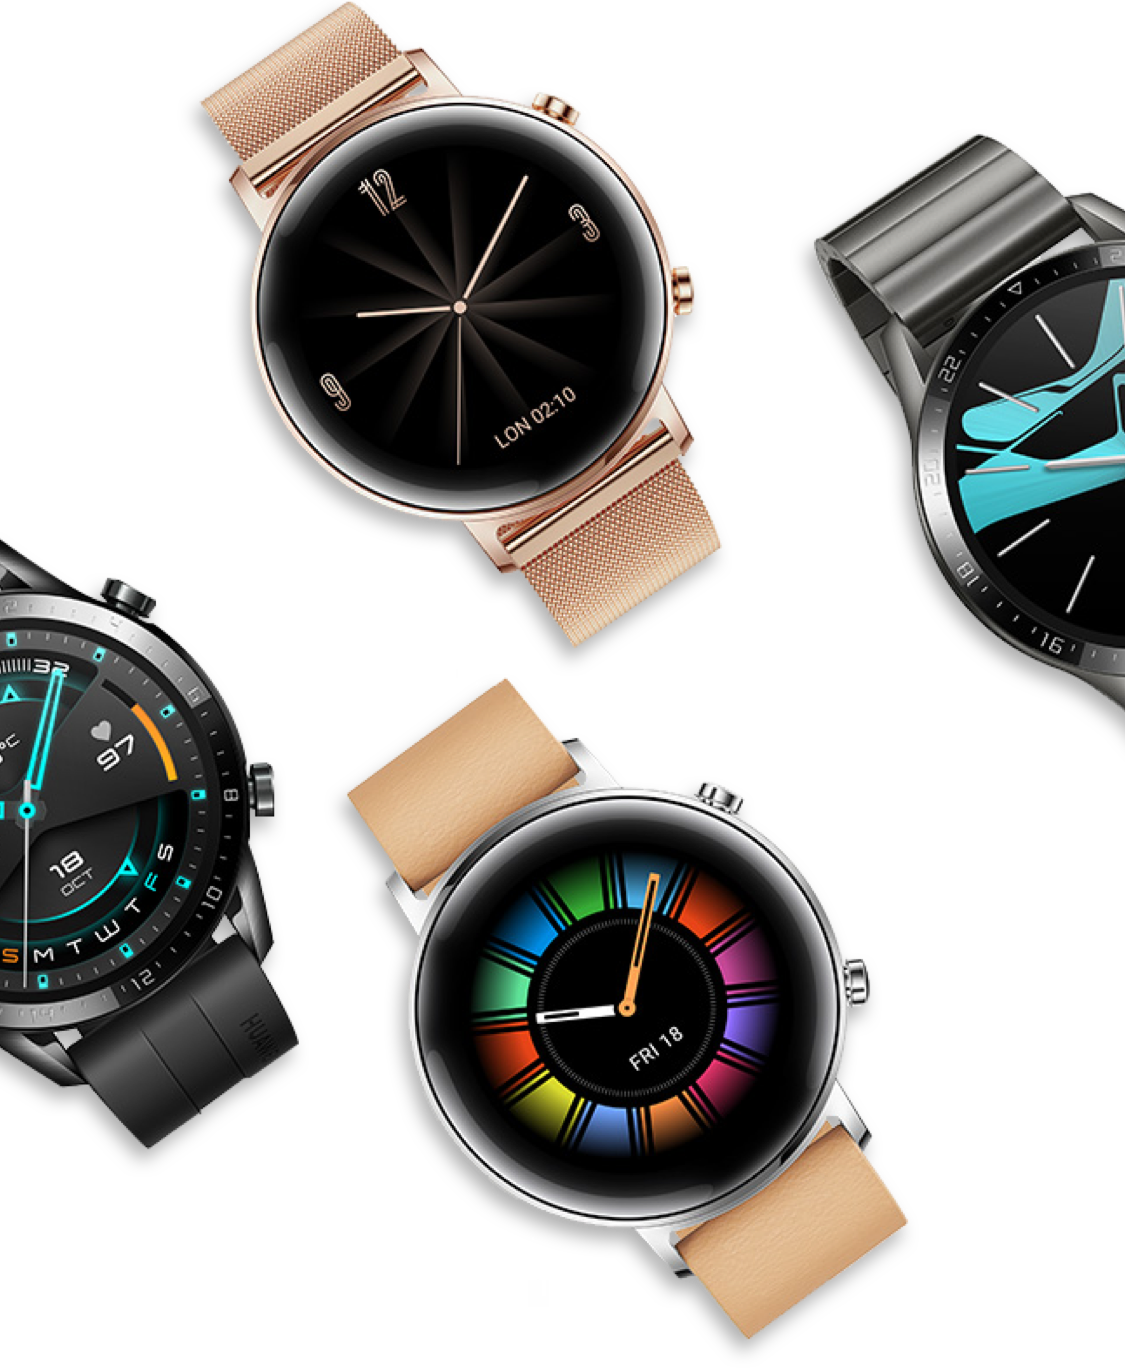 Smartwatch Huawei Watch GT 2 para Mujer